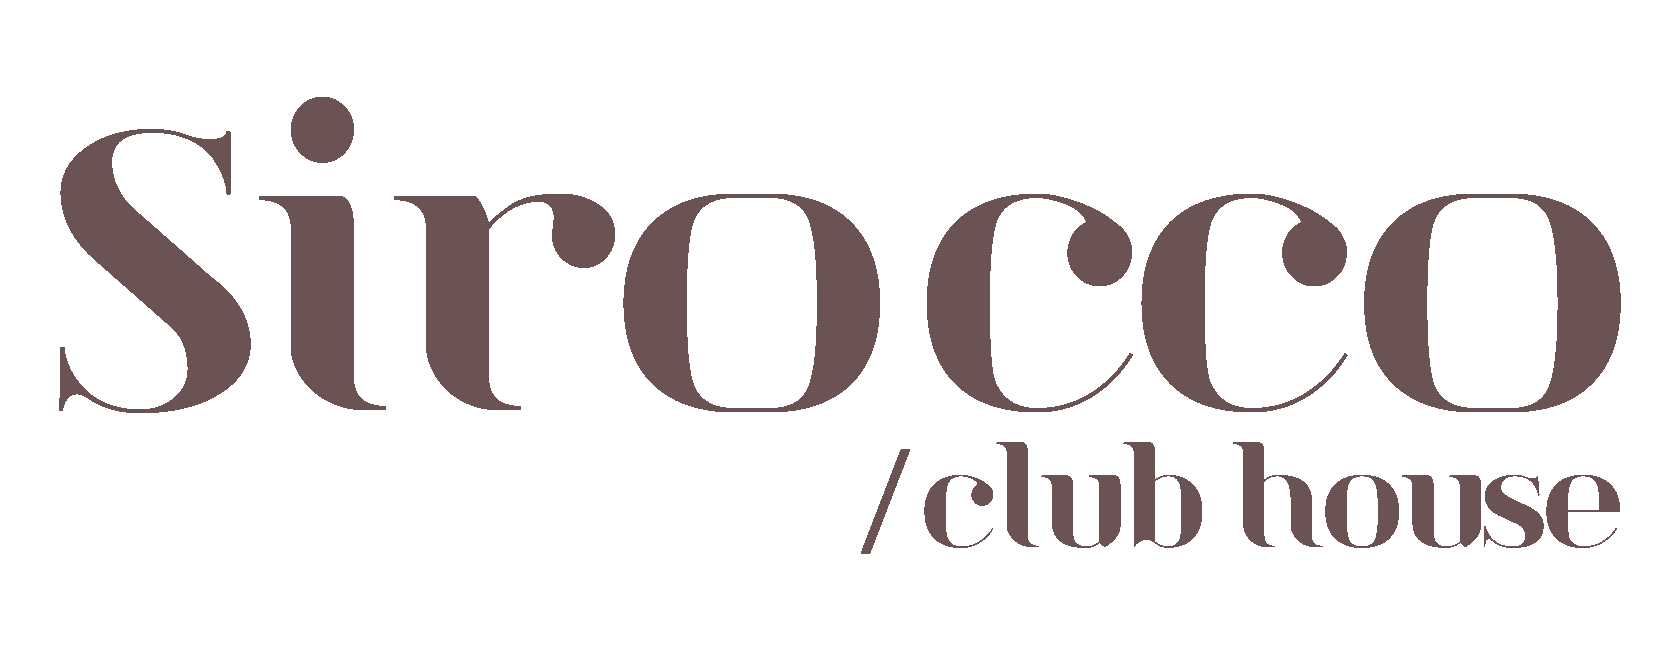 SIROCCO CLUB